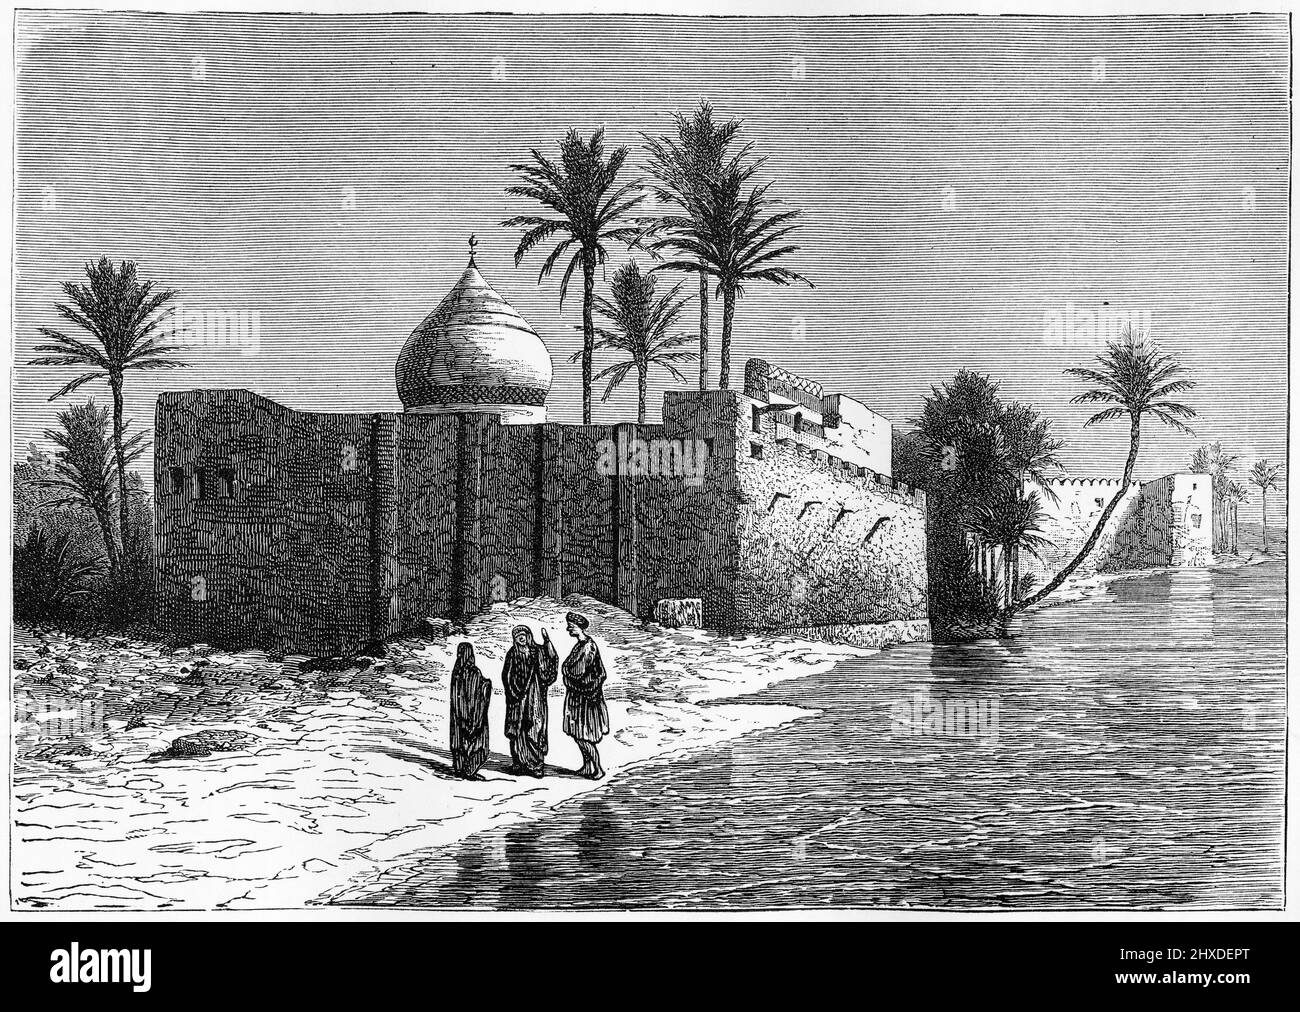 Gravure du tombeau supposé d'Ezra, aujourd'hui sanctuaire chiite et juif, situé à Al-ʻUzair dans le district de QAl'at Saleh, dans le gouvernorat de Maysan en Irak, sur la rive occidentale du Tigre. Gravure vers 1880 Banque D'Images